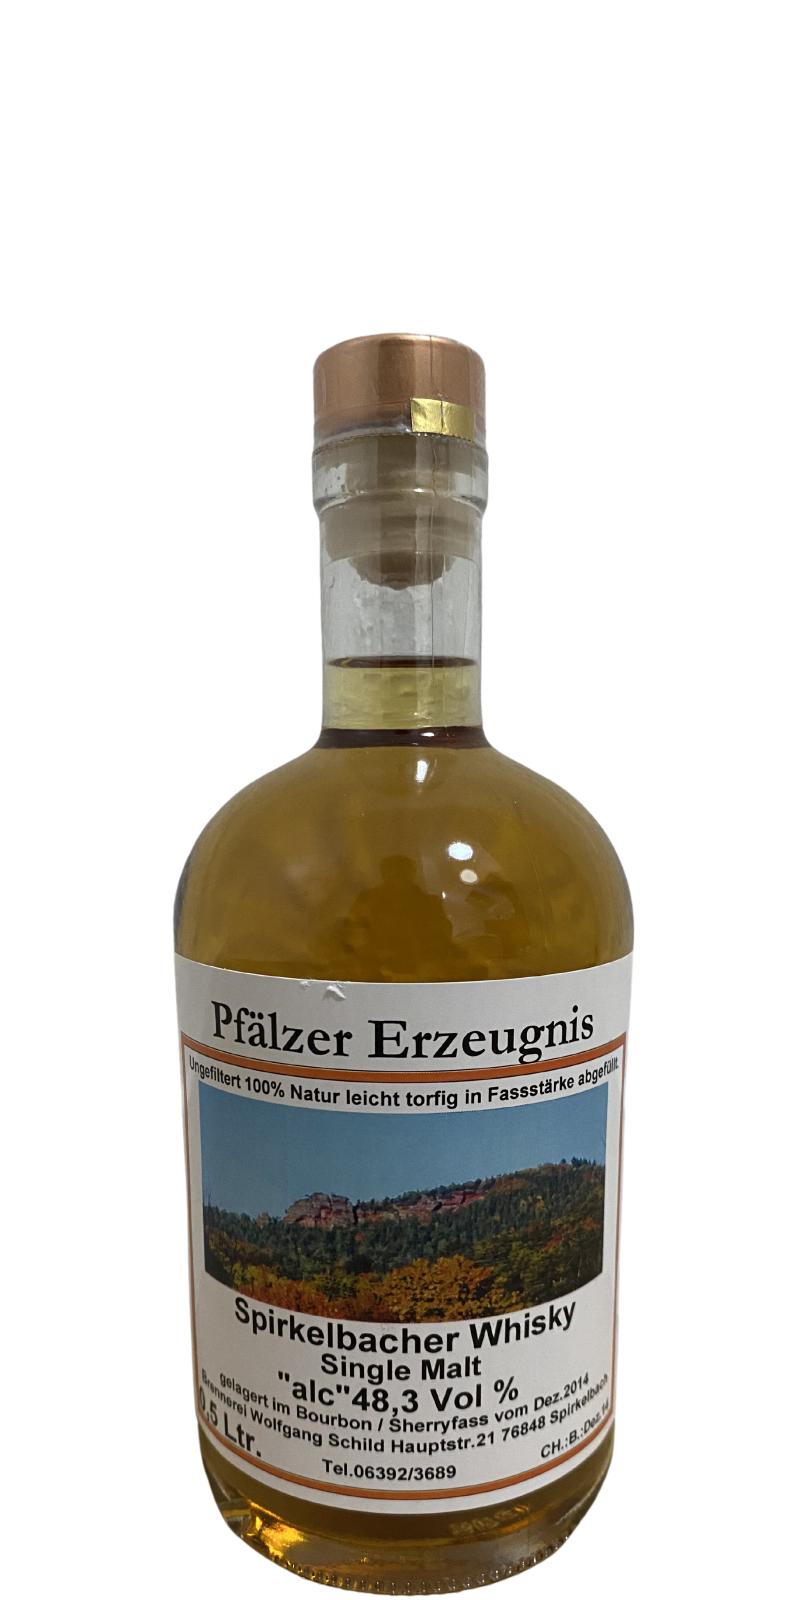 Spirkelbacher Whisky 2014 Single Malt Bourbon Sherryfass 48.3% 500ml